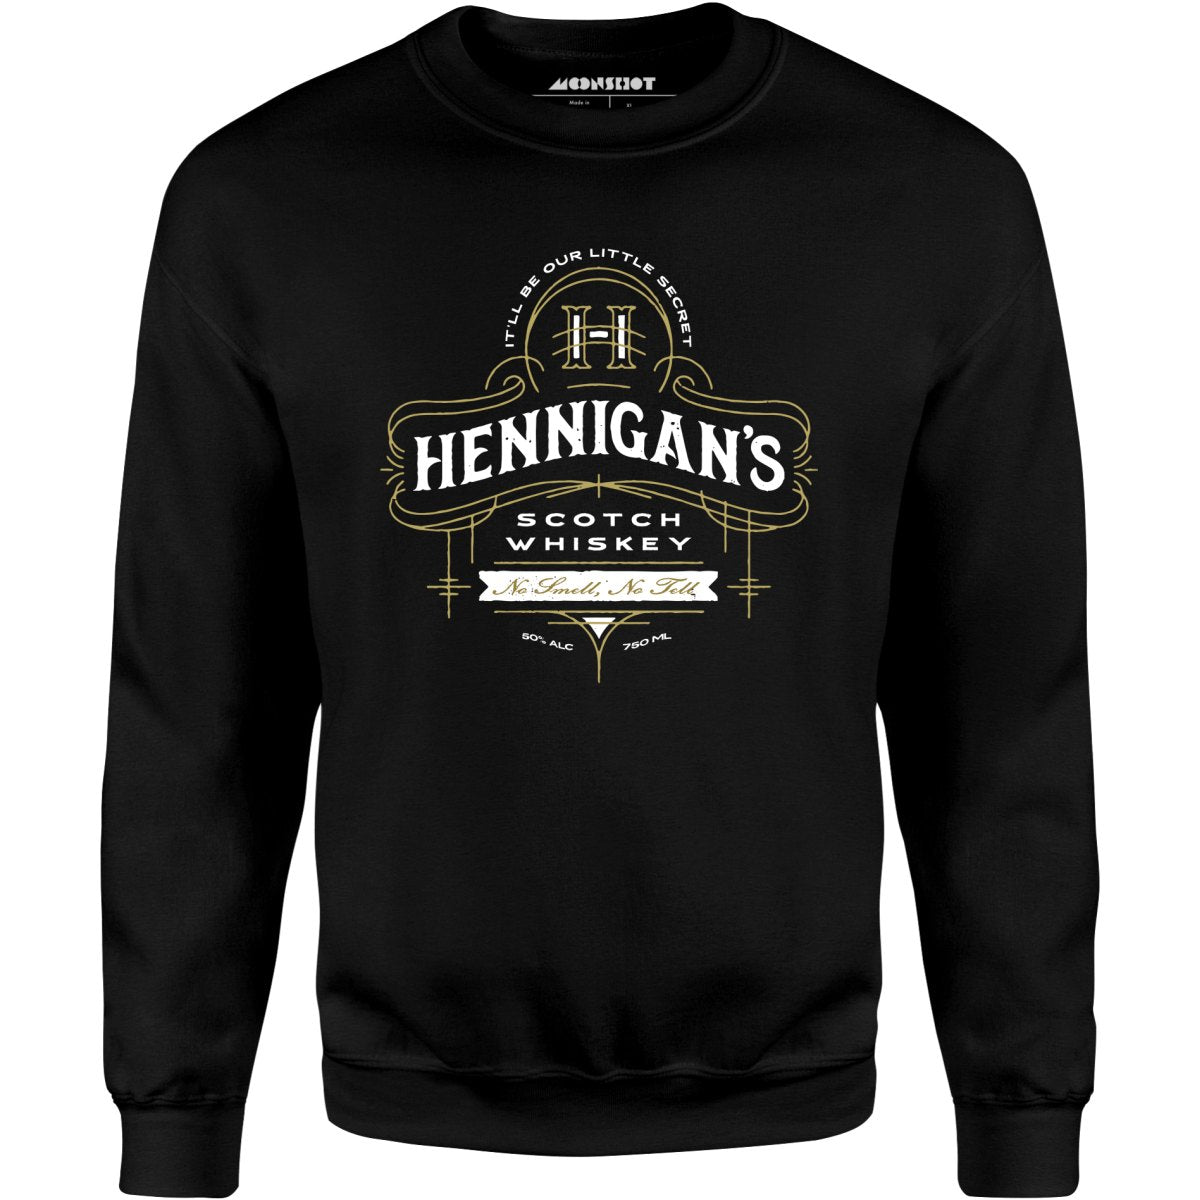 Hennigan's Scotch Whiskey - Unisex Sweatshirt